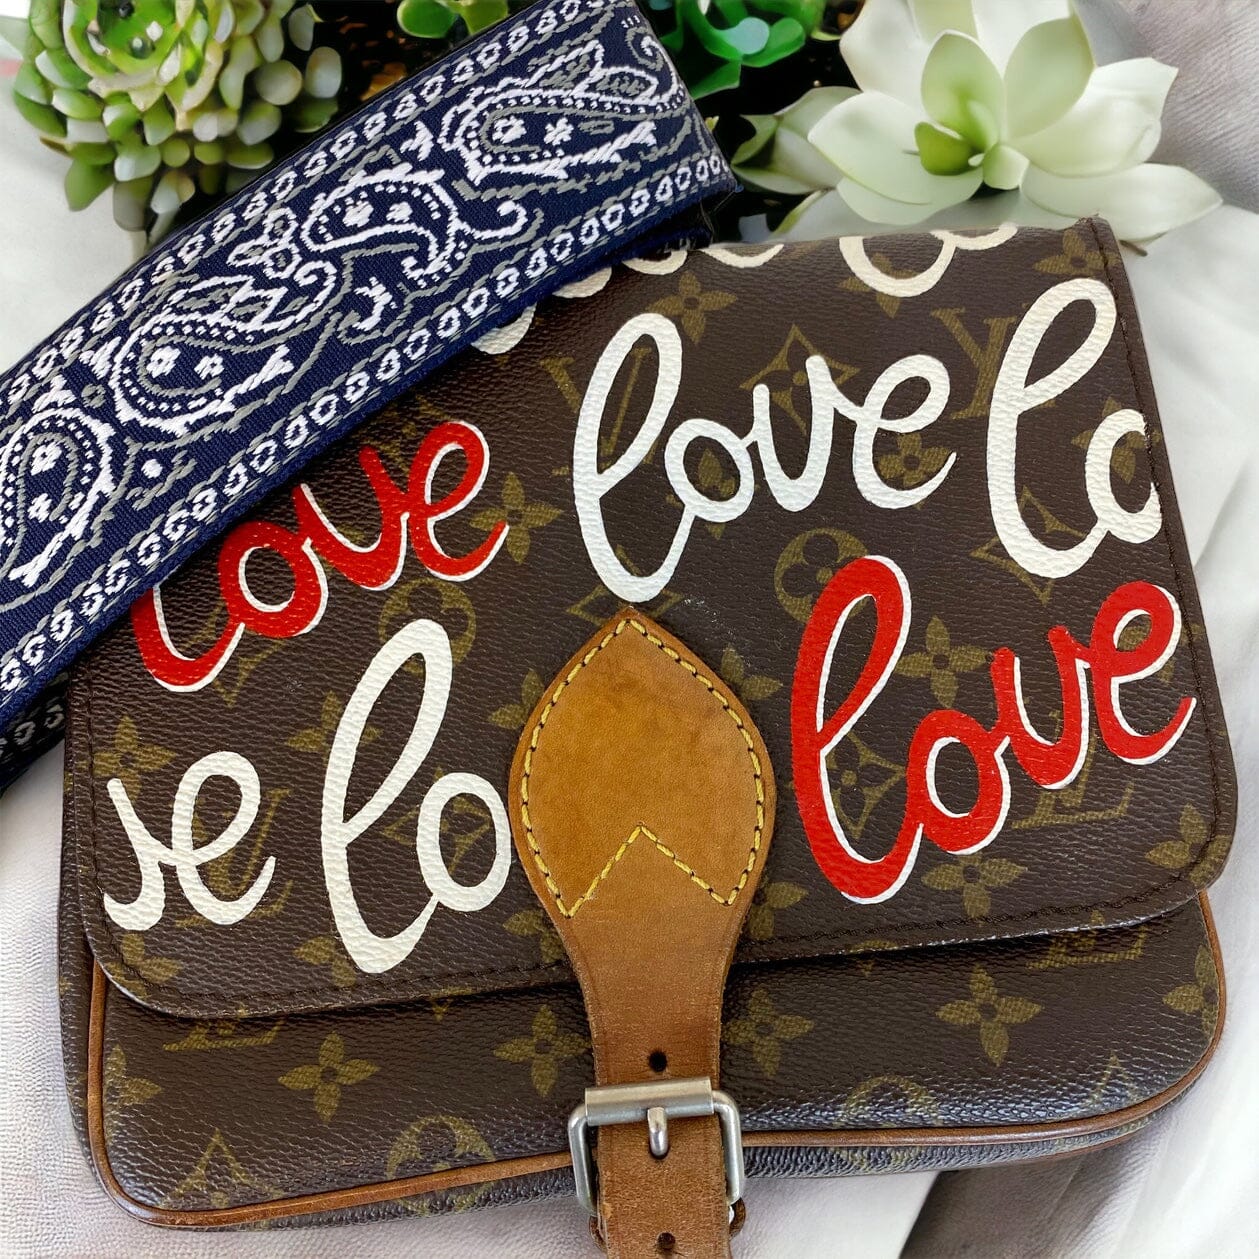 Louis Vuitton Love Letters Figurine Bag Charm